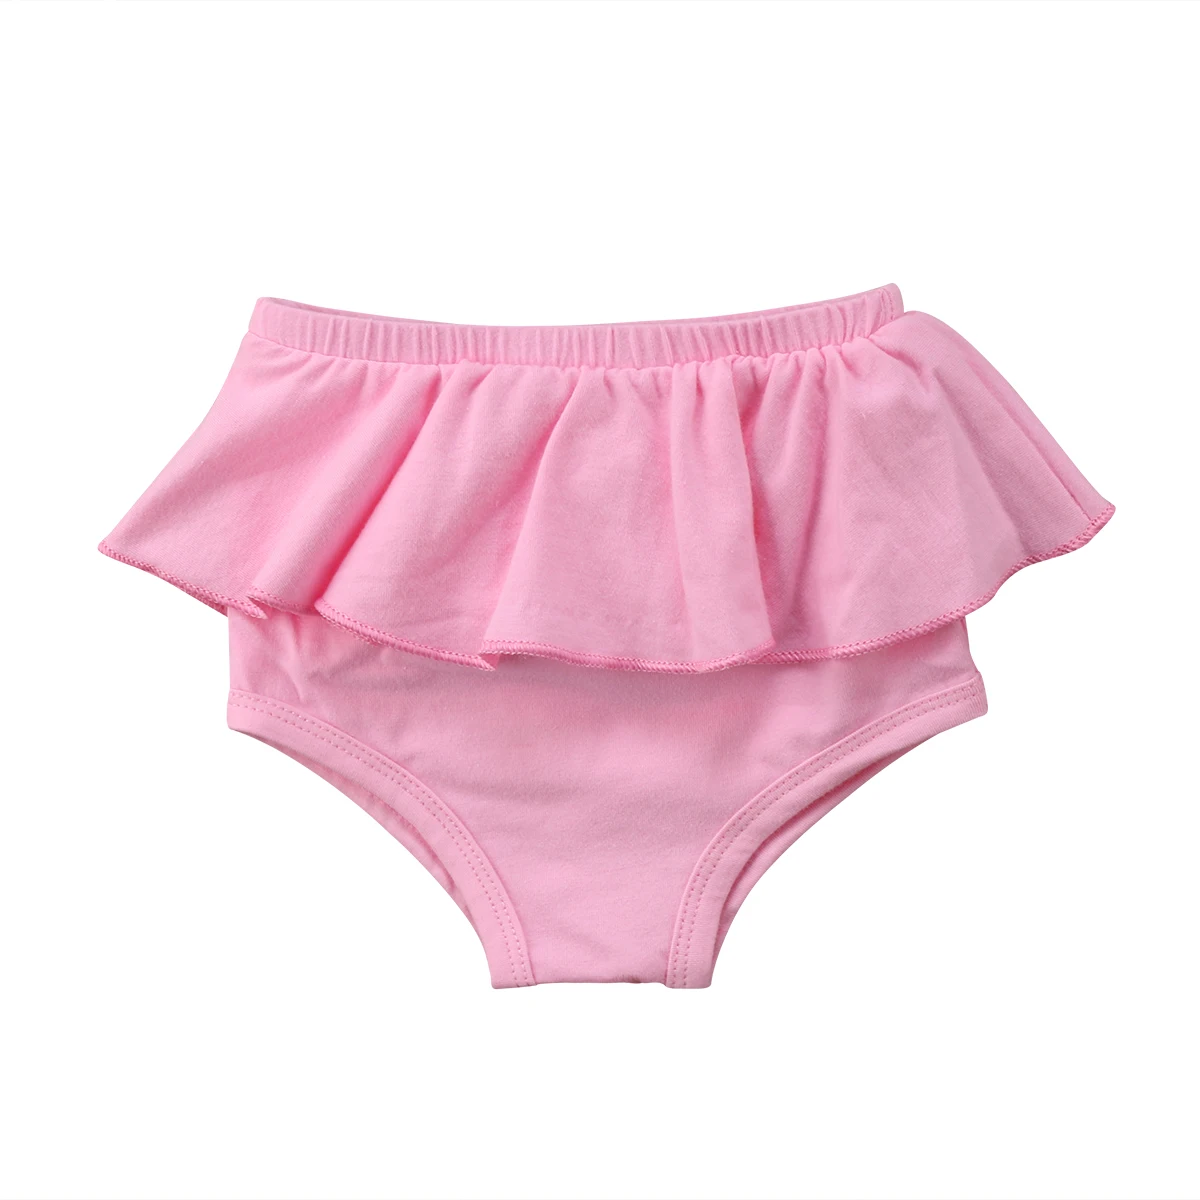 Одежда для новорожденных Одежда для детей и малышей для девочек короткие штаны-шаровары брюки PP шаровары трусики шорты черный, розовый, красный, на возраст от 0 до 24 месяцев - Цвет: Розовый